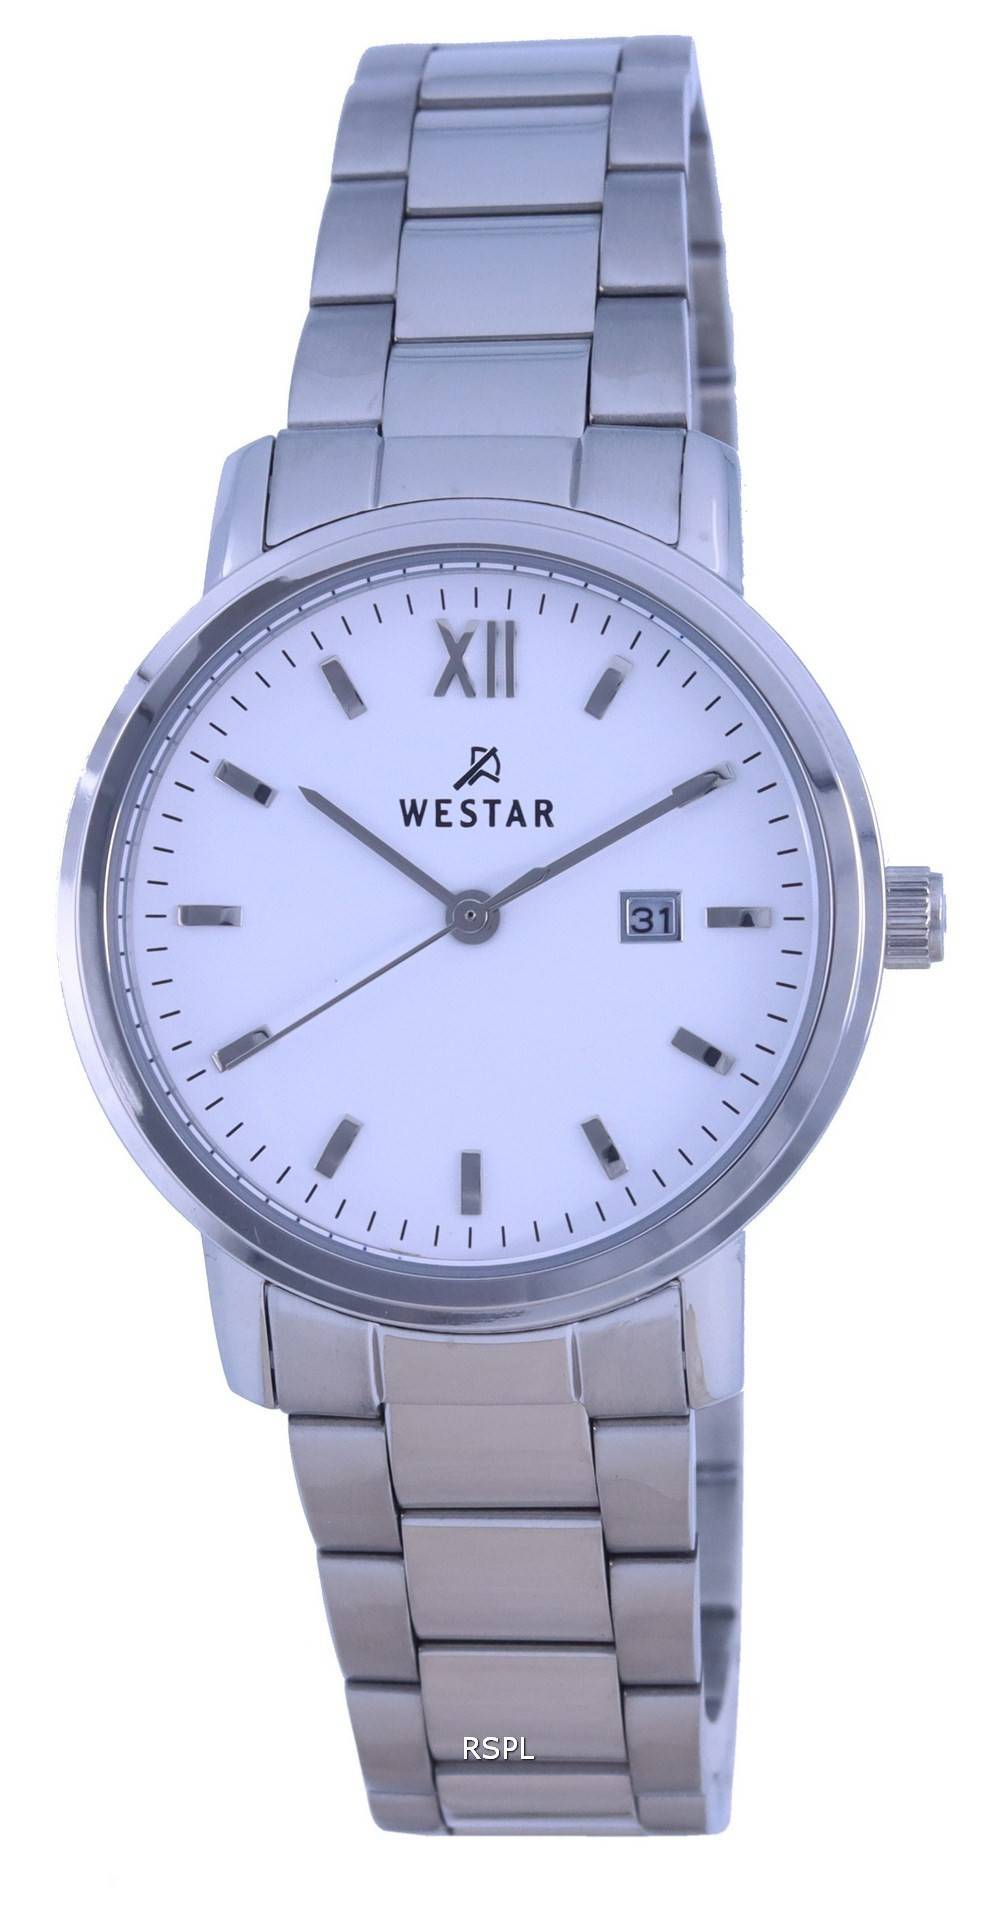 Westar valkoinen kellotaulu ruostumattomasta terÃ¤ksestÃ¤ valmistettu kvartsi 50243 STN 101 miesten kello